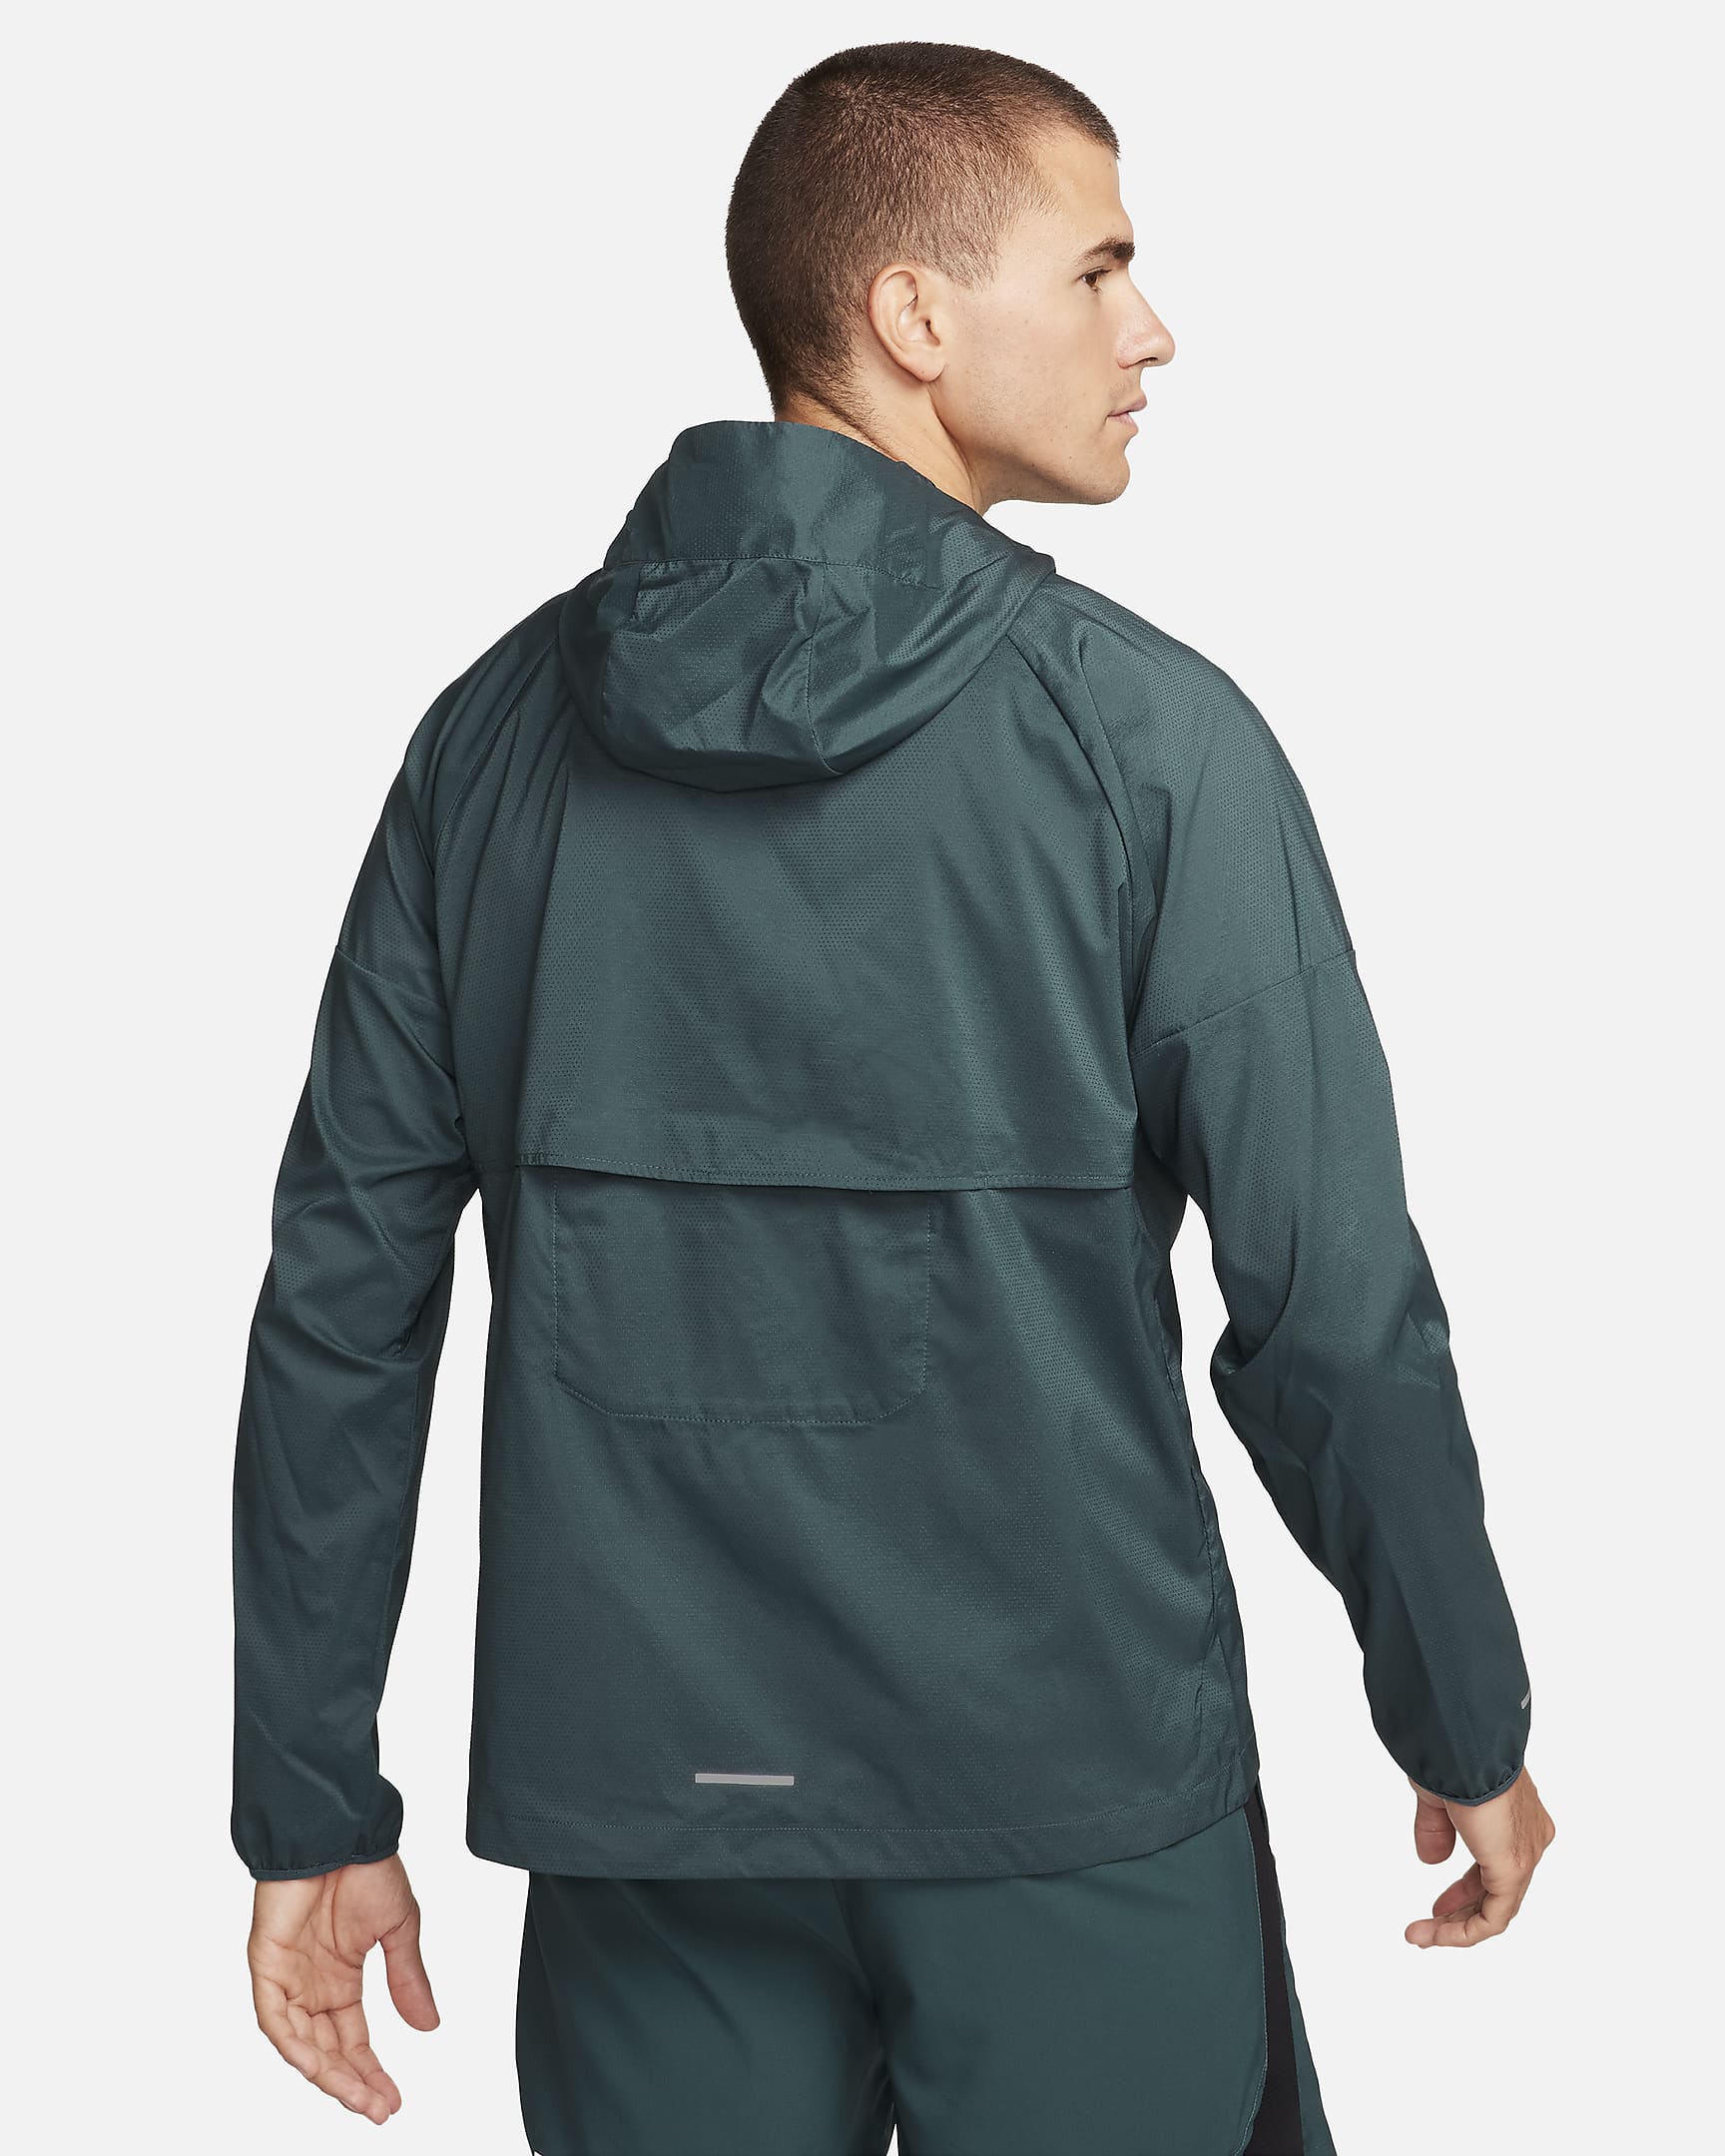 Nike Windrunner Windbreaker Jacket - Green